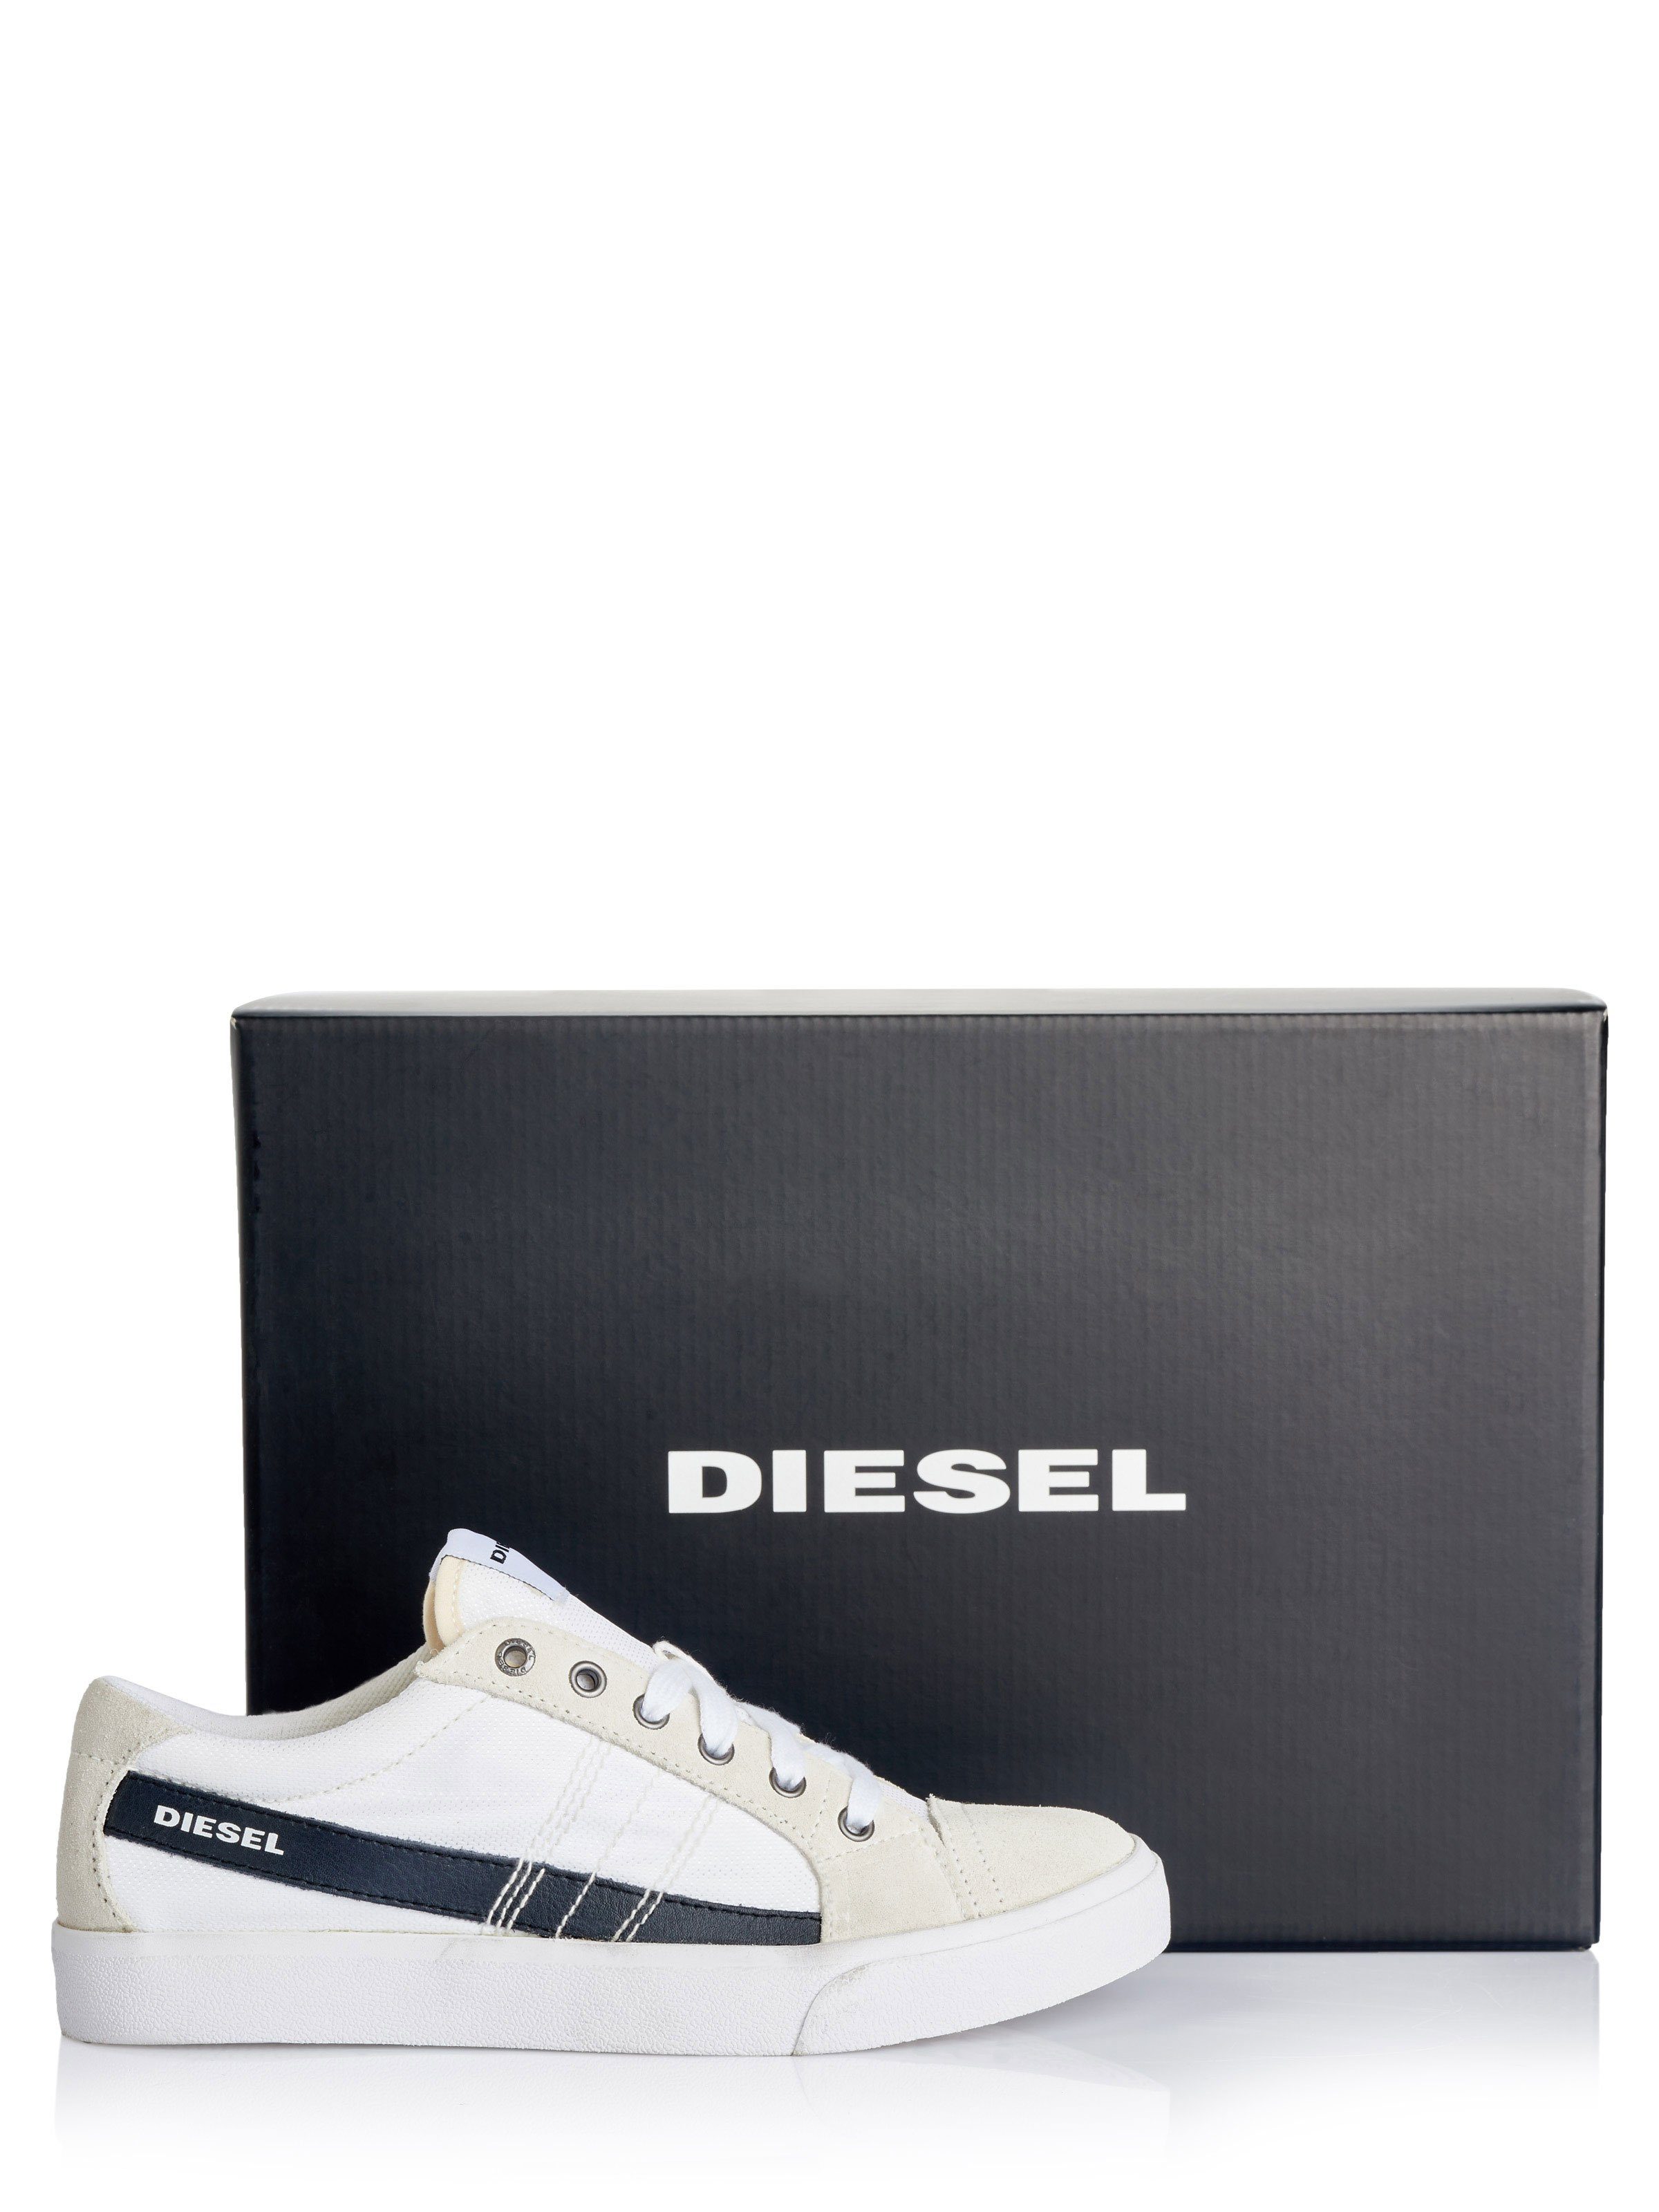 Diesel Schuhe Sneaker Diesel